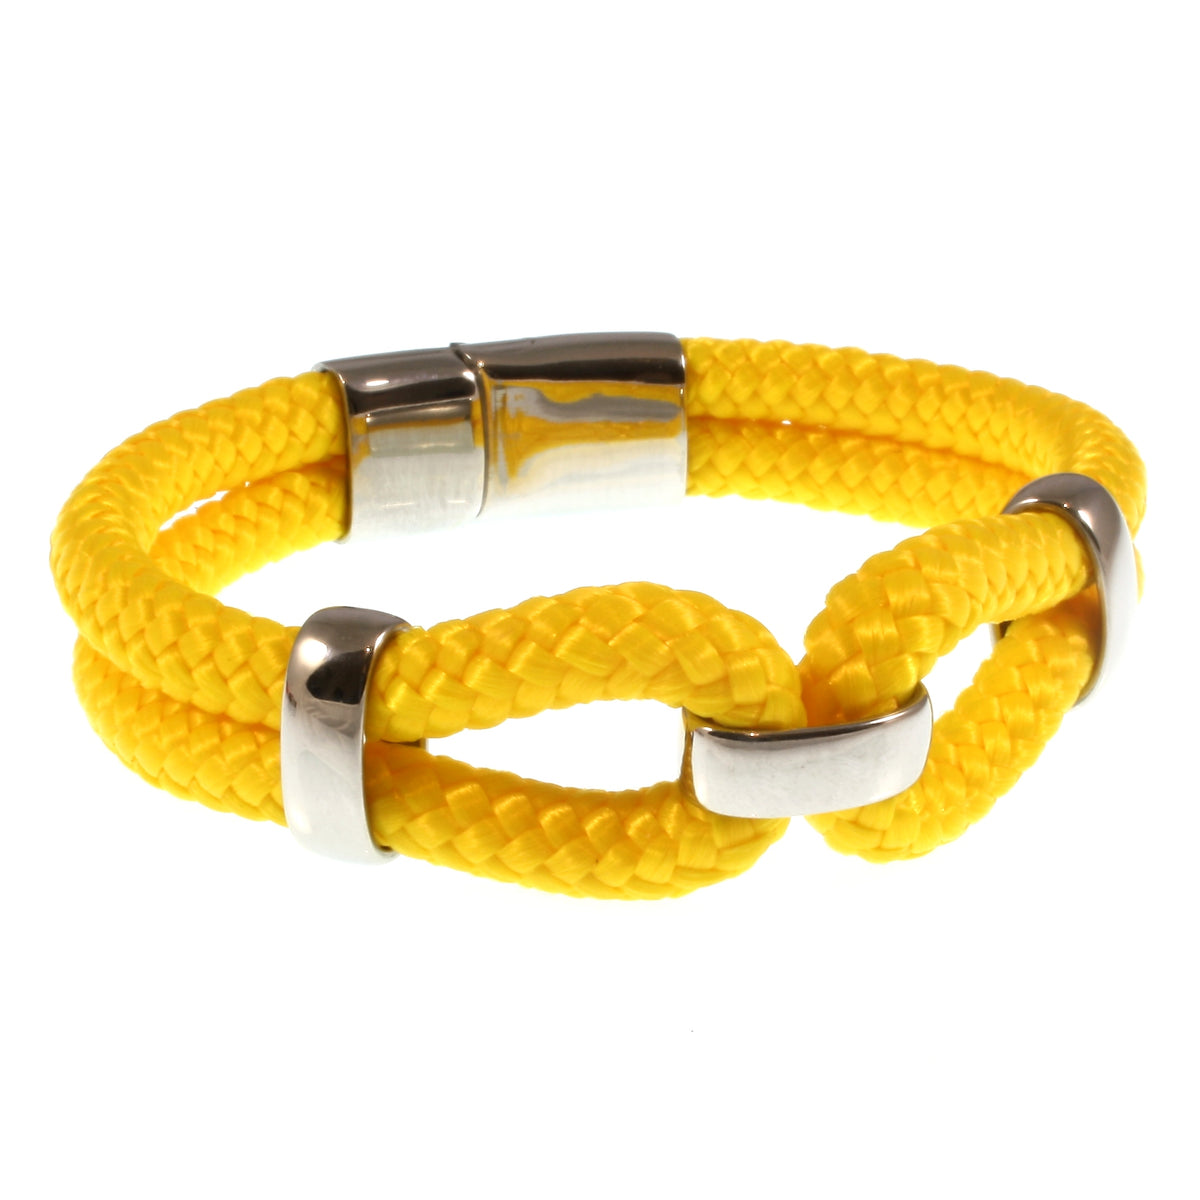 Damen-Segeltau-armband-roma-gelb-geflochten-Edelstahlverschluss-vorn-wavepirate-shop-st